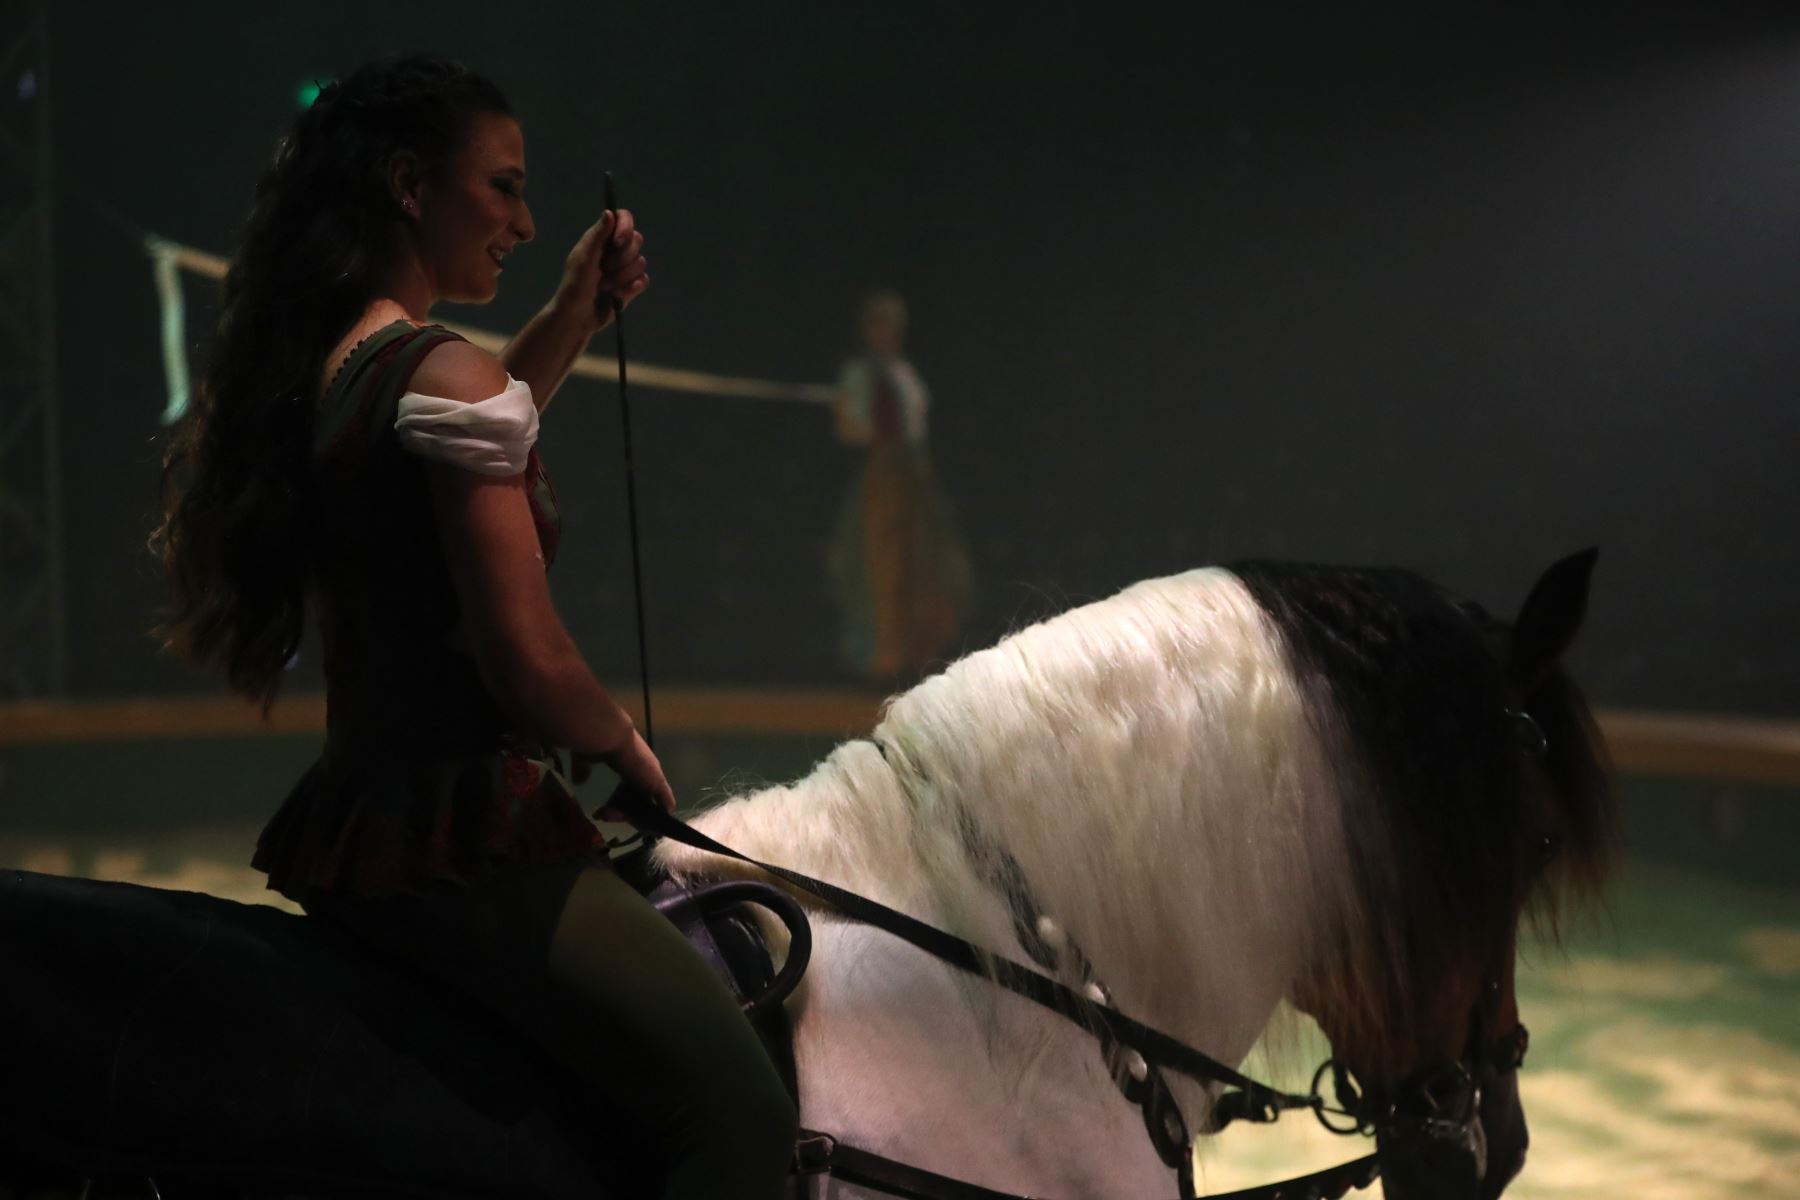 Con Camborio, el nuevo espectáculo de la Tarumba de este 2023, vuelven los caballos artistas, después de 3 años de su ausencia en los espectáculos. Foto: ANDINA/Daniel Bracamonte